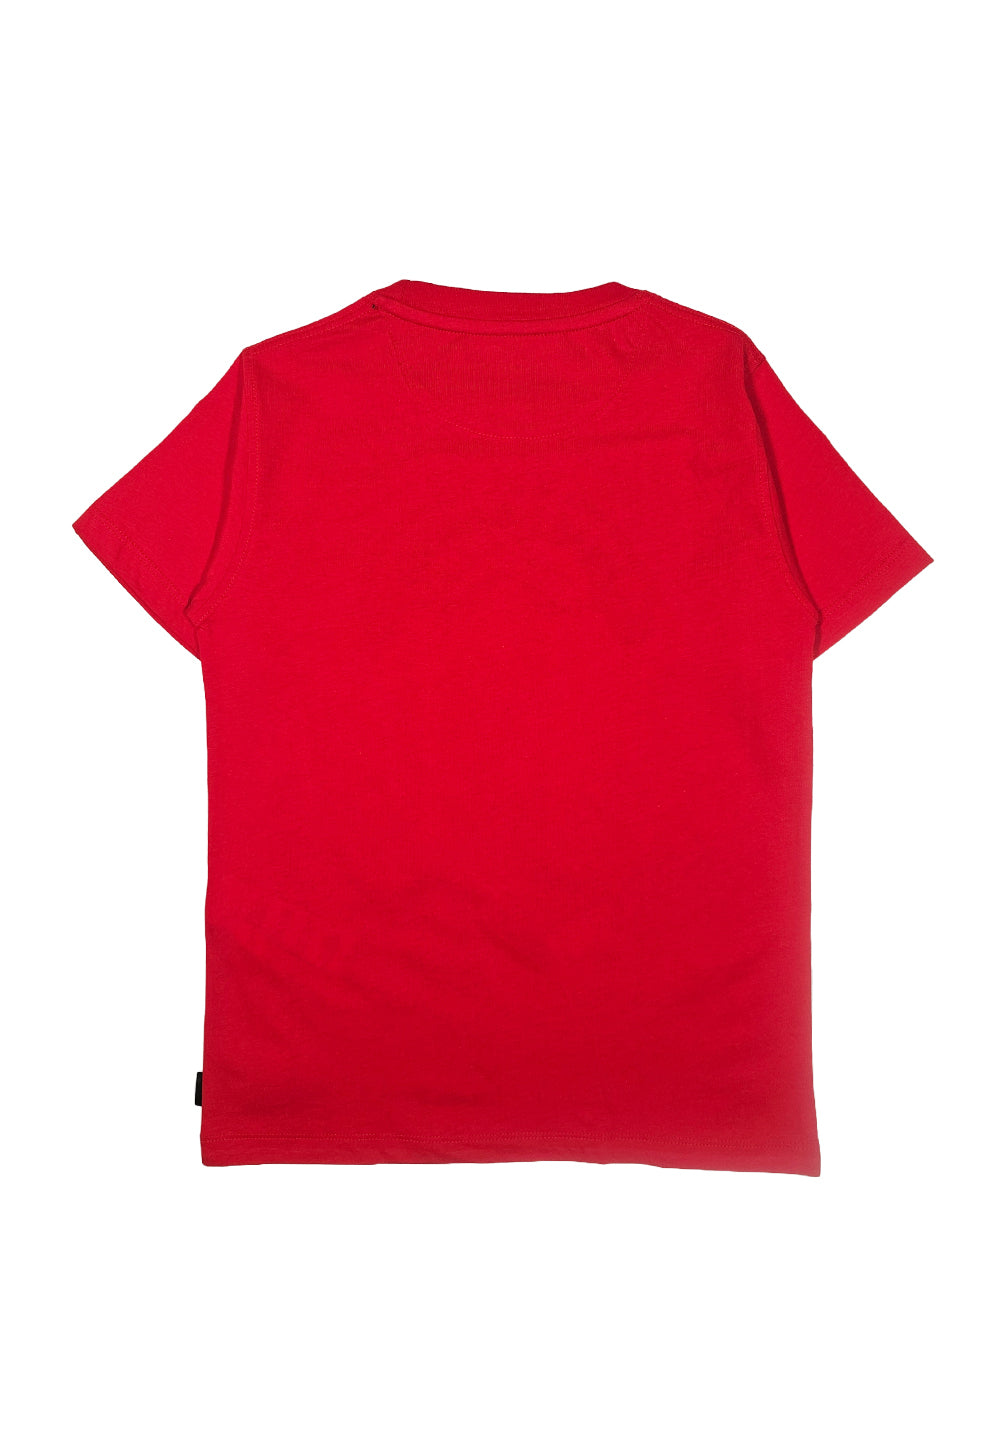 Rotes T-Shirt für Jungen